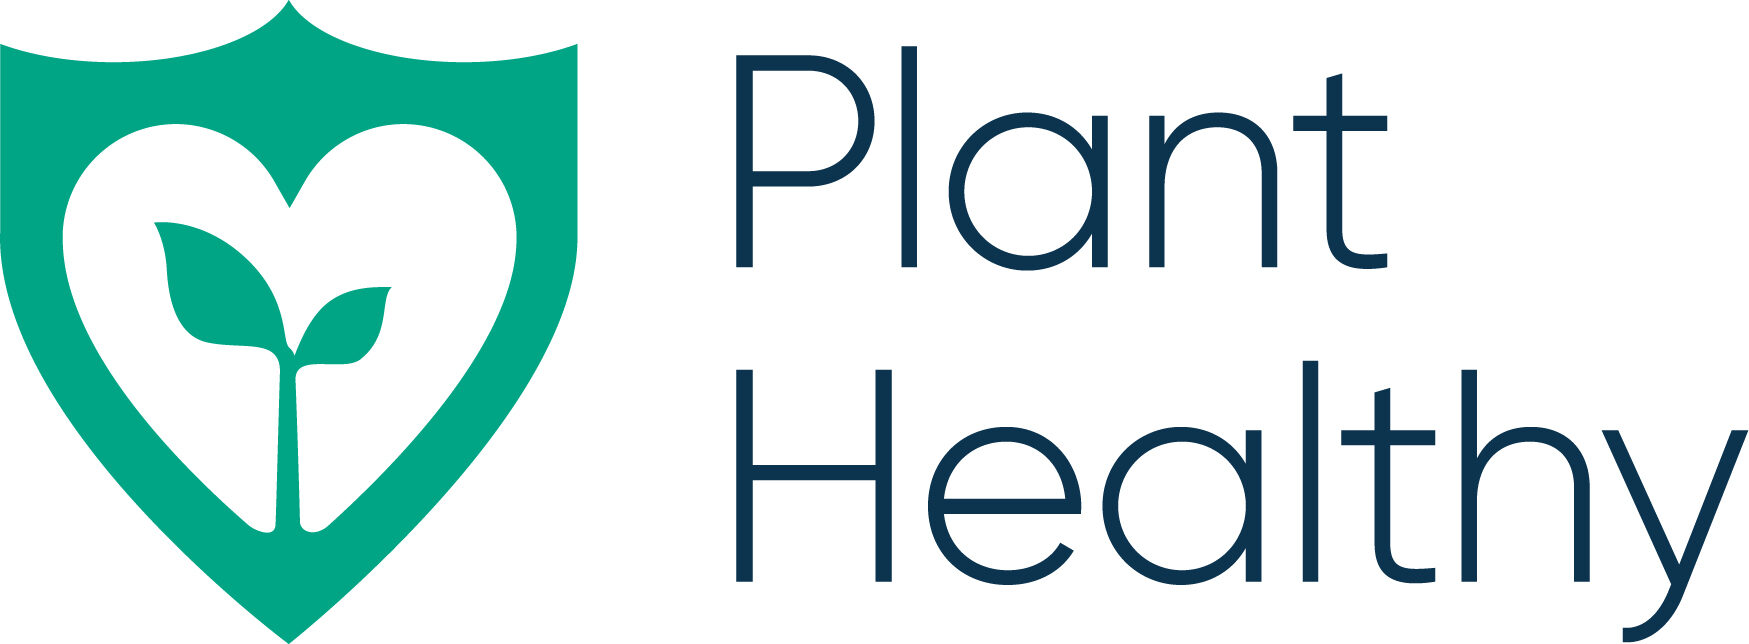 Plant Healthy Logos - RGB - Condensed